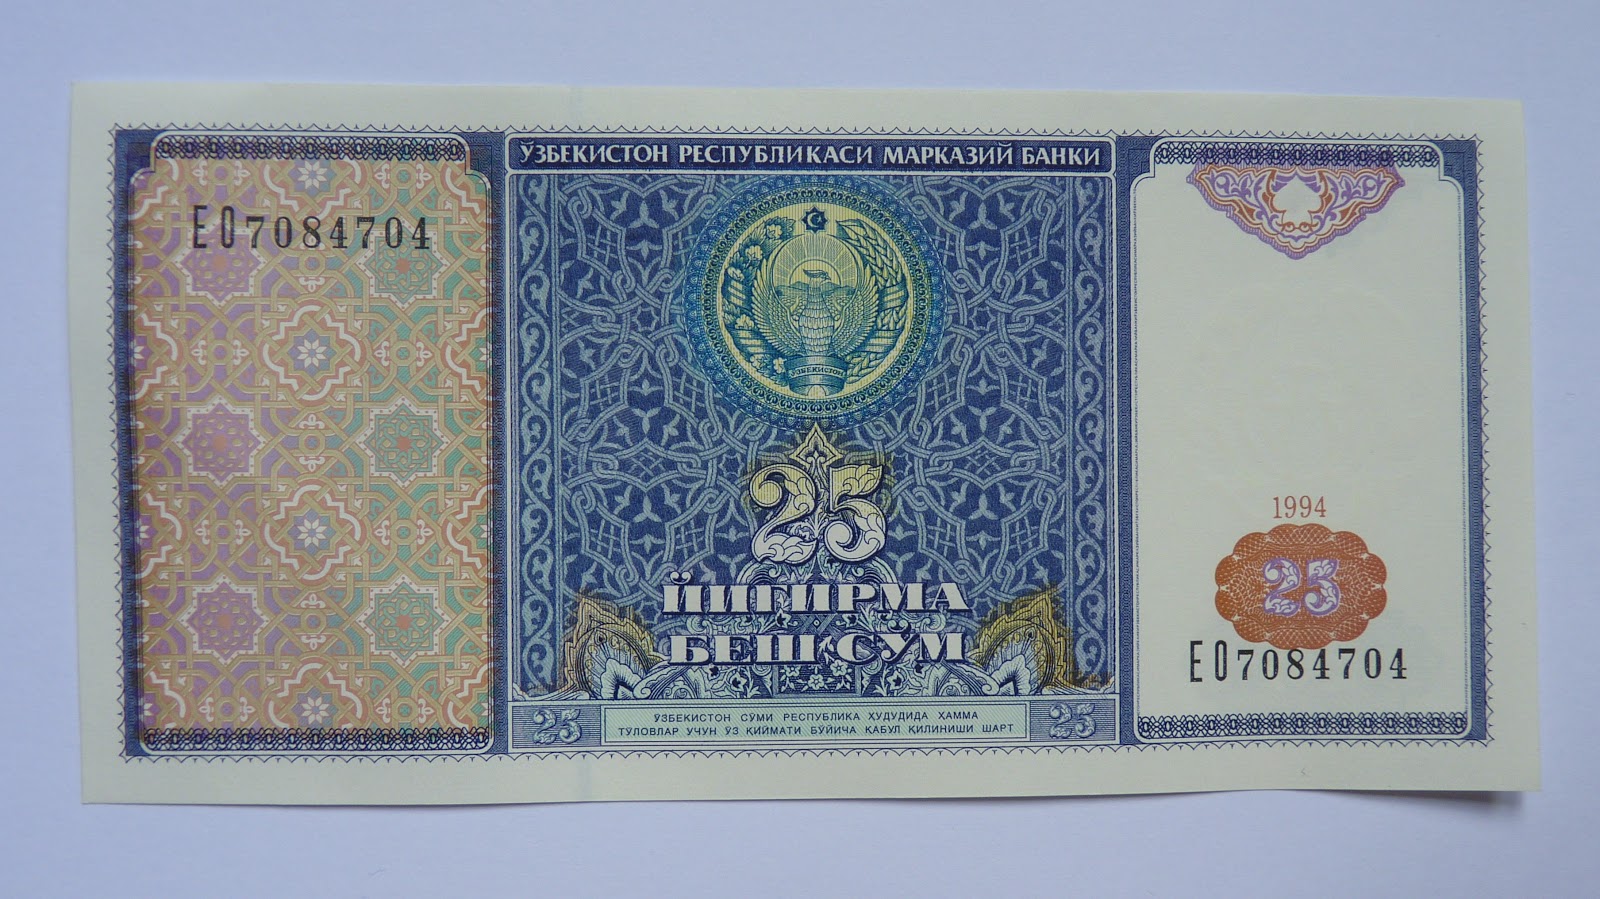 20000 узбекских. Уч сум Узбекистан 1994. Узбекистан 1994 год валюта. Банкноты Узбекистана 1994. 25 Сум Узбекистан.